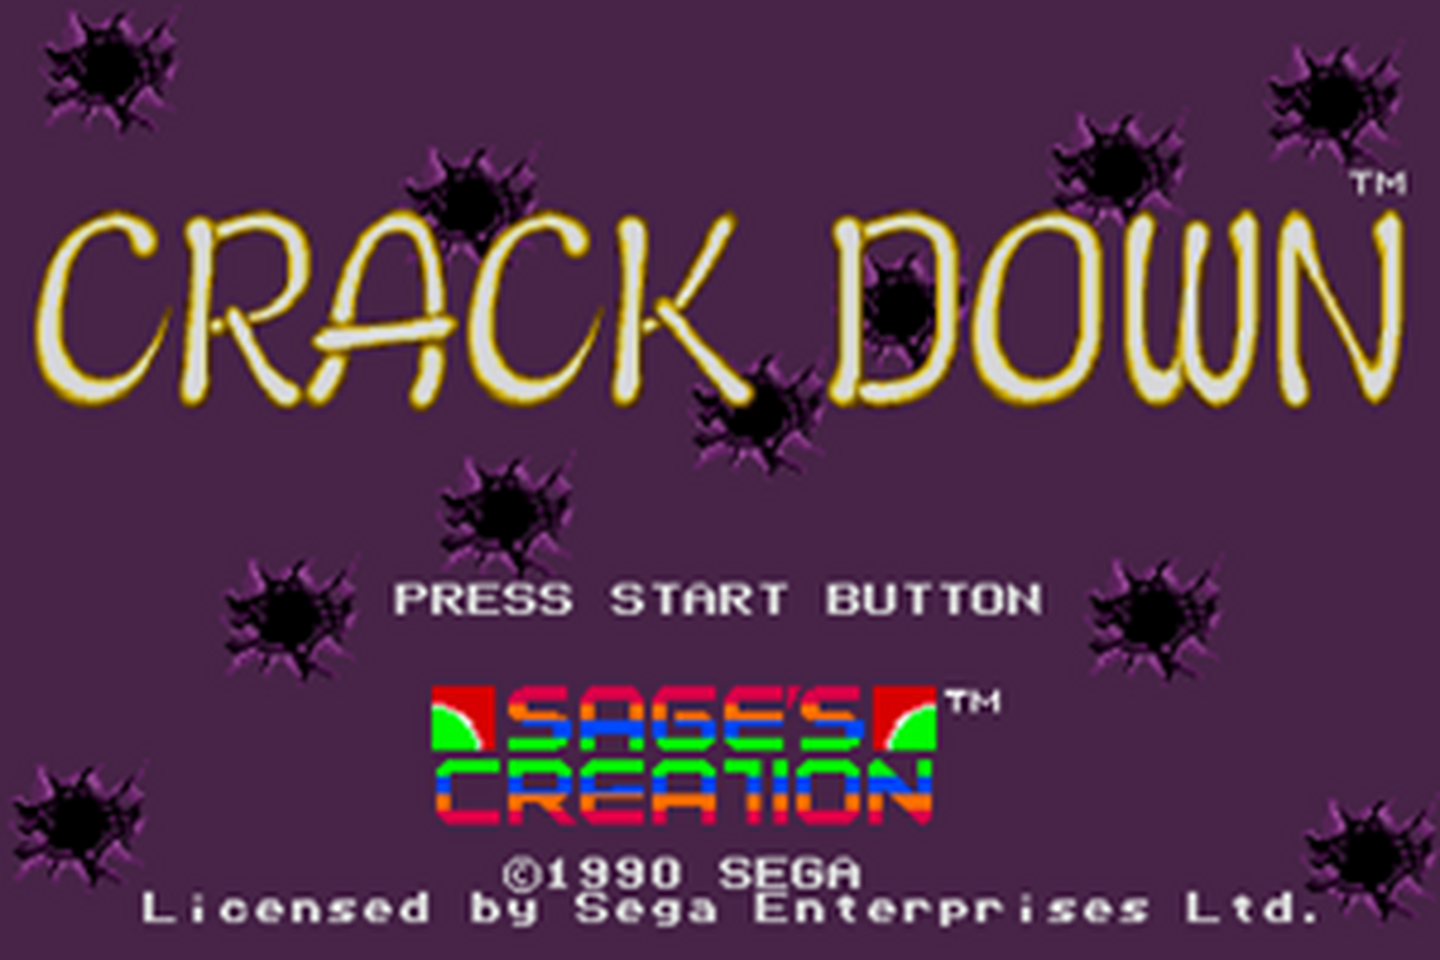 SMD GameBase Crack_Down SEGA_Enterprises_Ltd. 1990